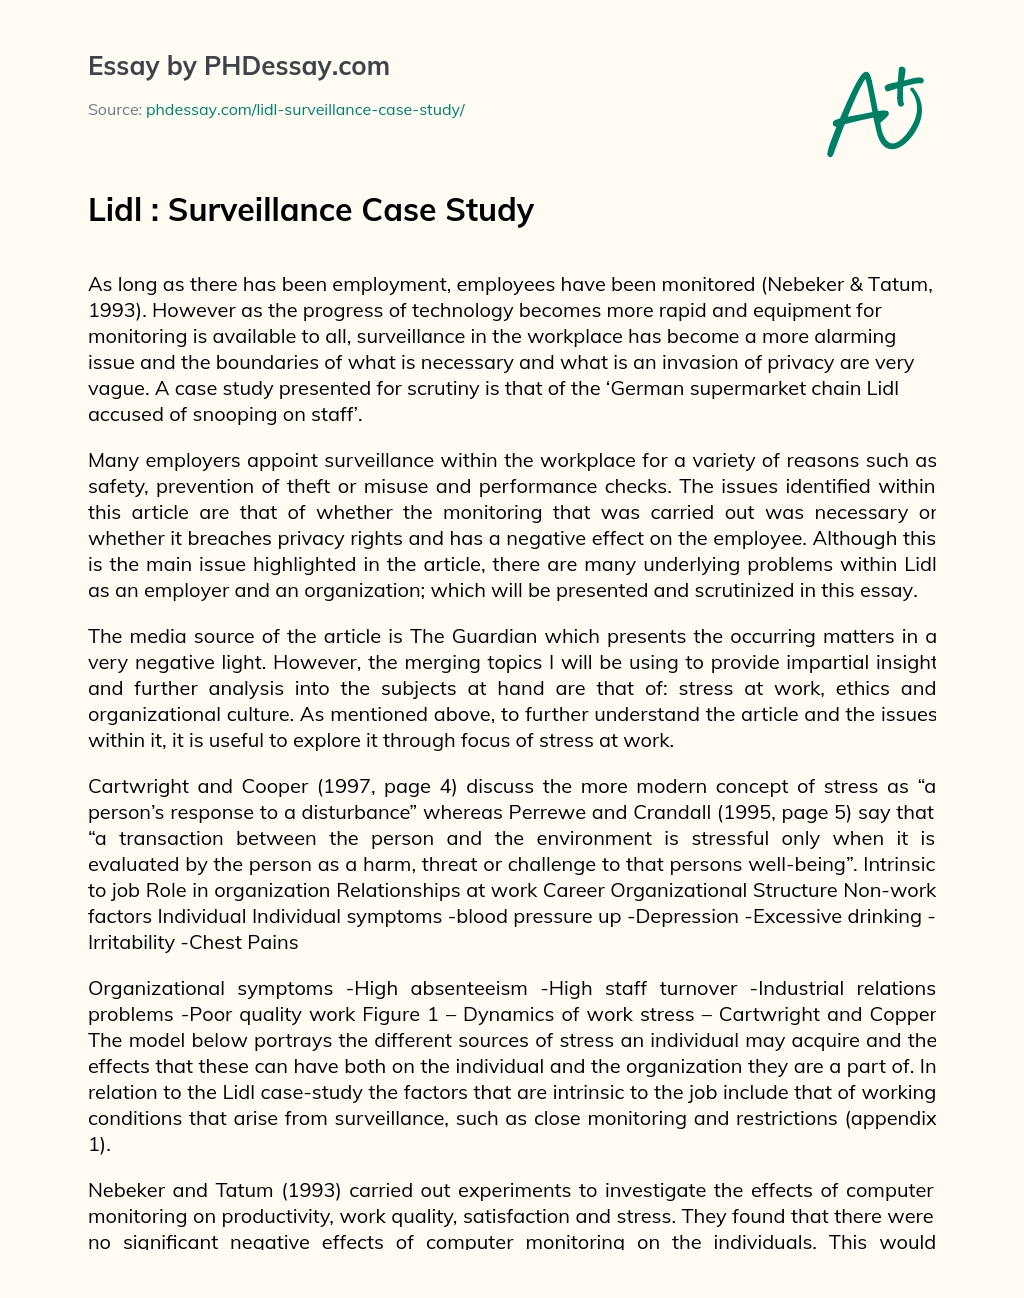 Lidl : Surveillance Case Study essay